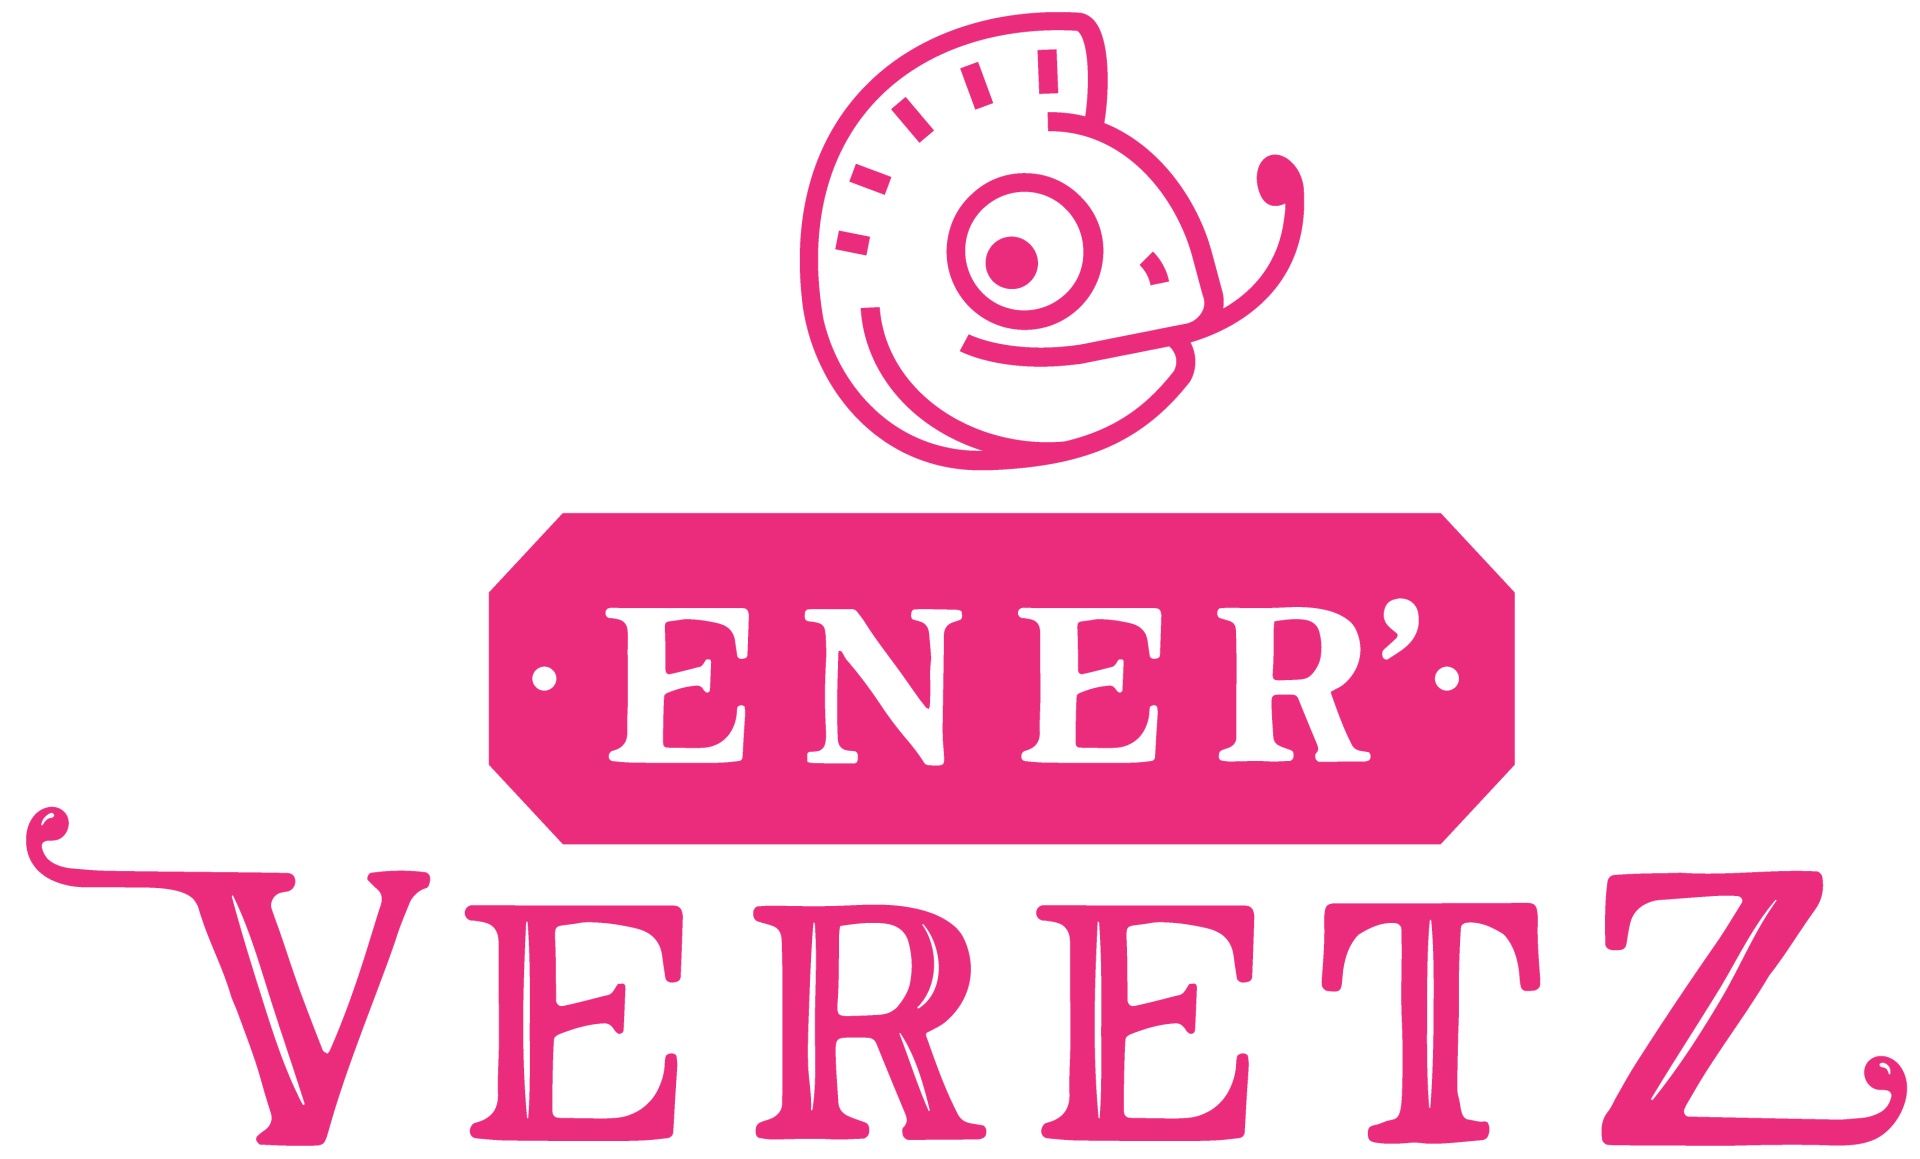 ener-veretz-logo-transparent.png